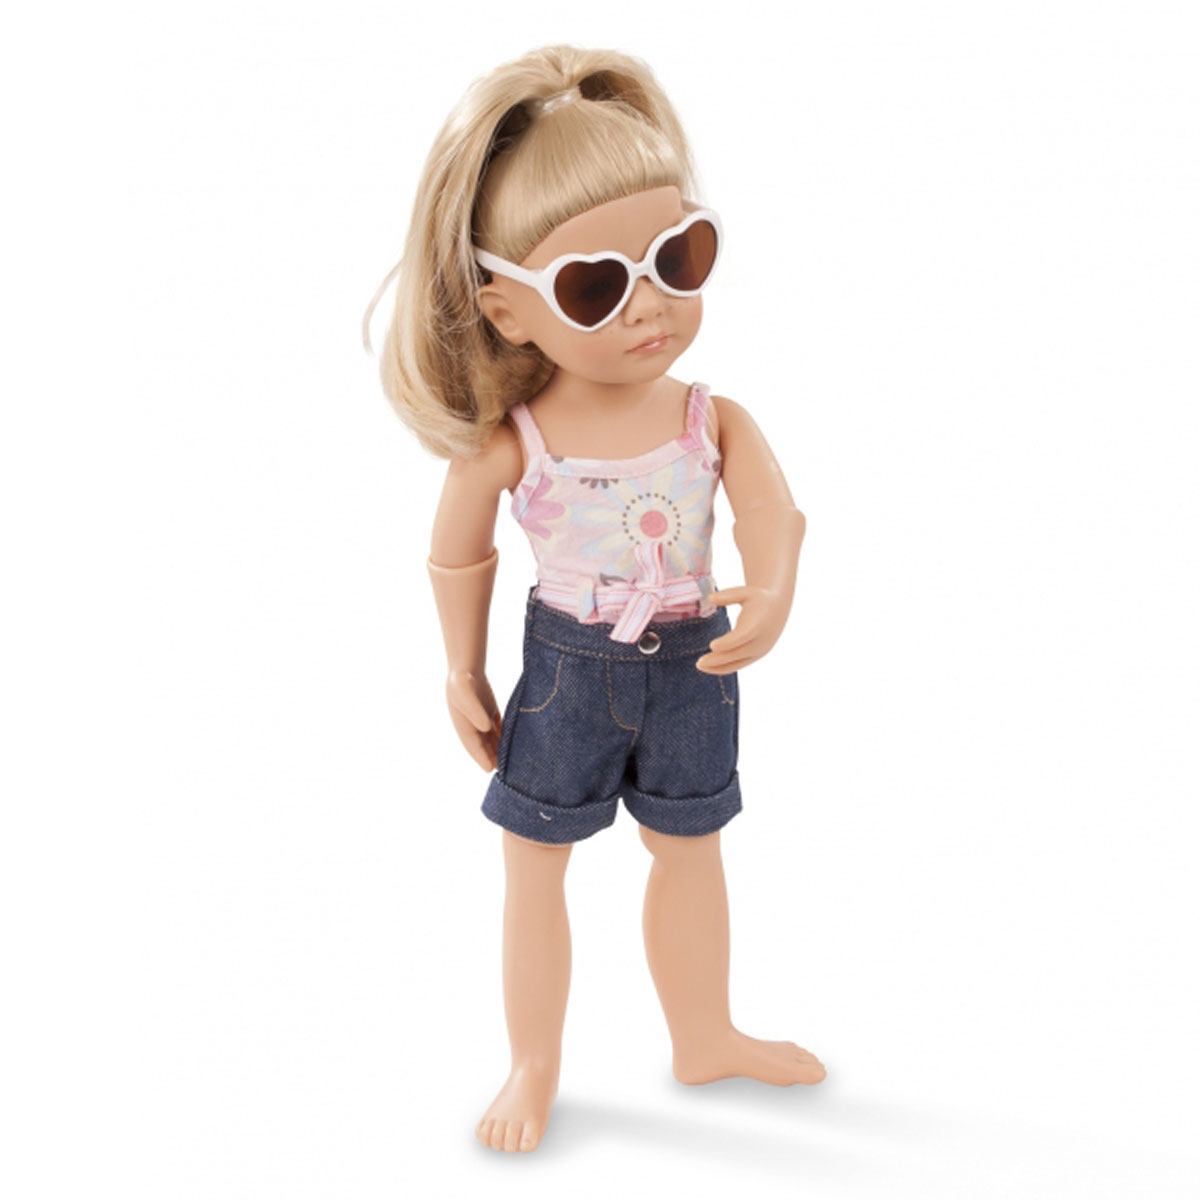 Набор одежды и аксессуаров Летняя радость для куклы 36 см  